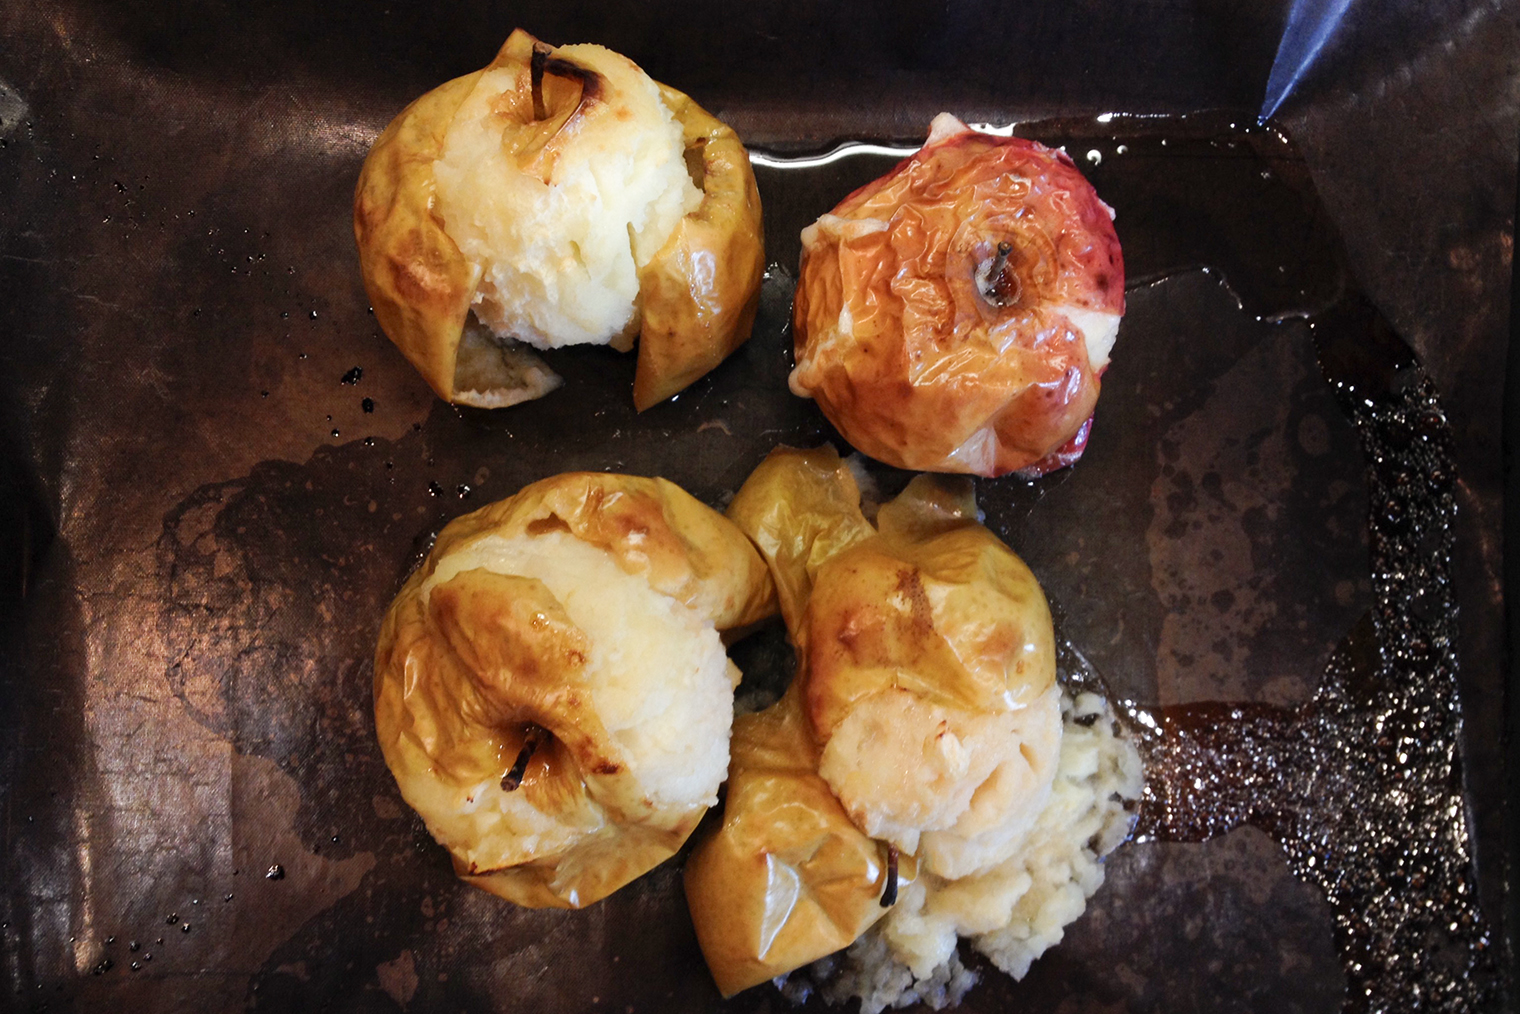 Яблоки для зефира можно запечь в духовке, пока она нагревается, допустим, для свиной шеи. Понадобятся температура до 180 °C и 40 минут